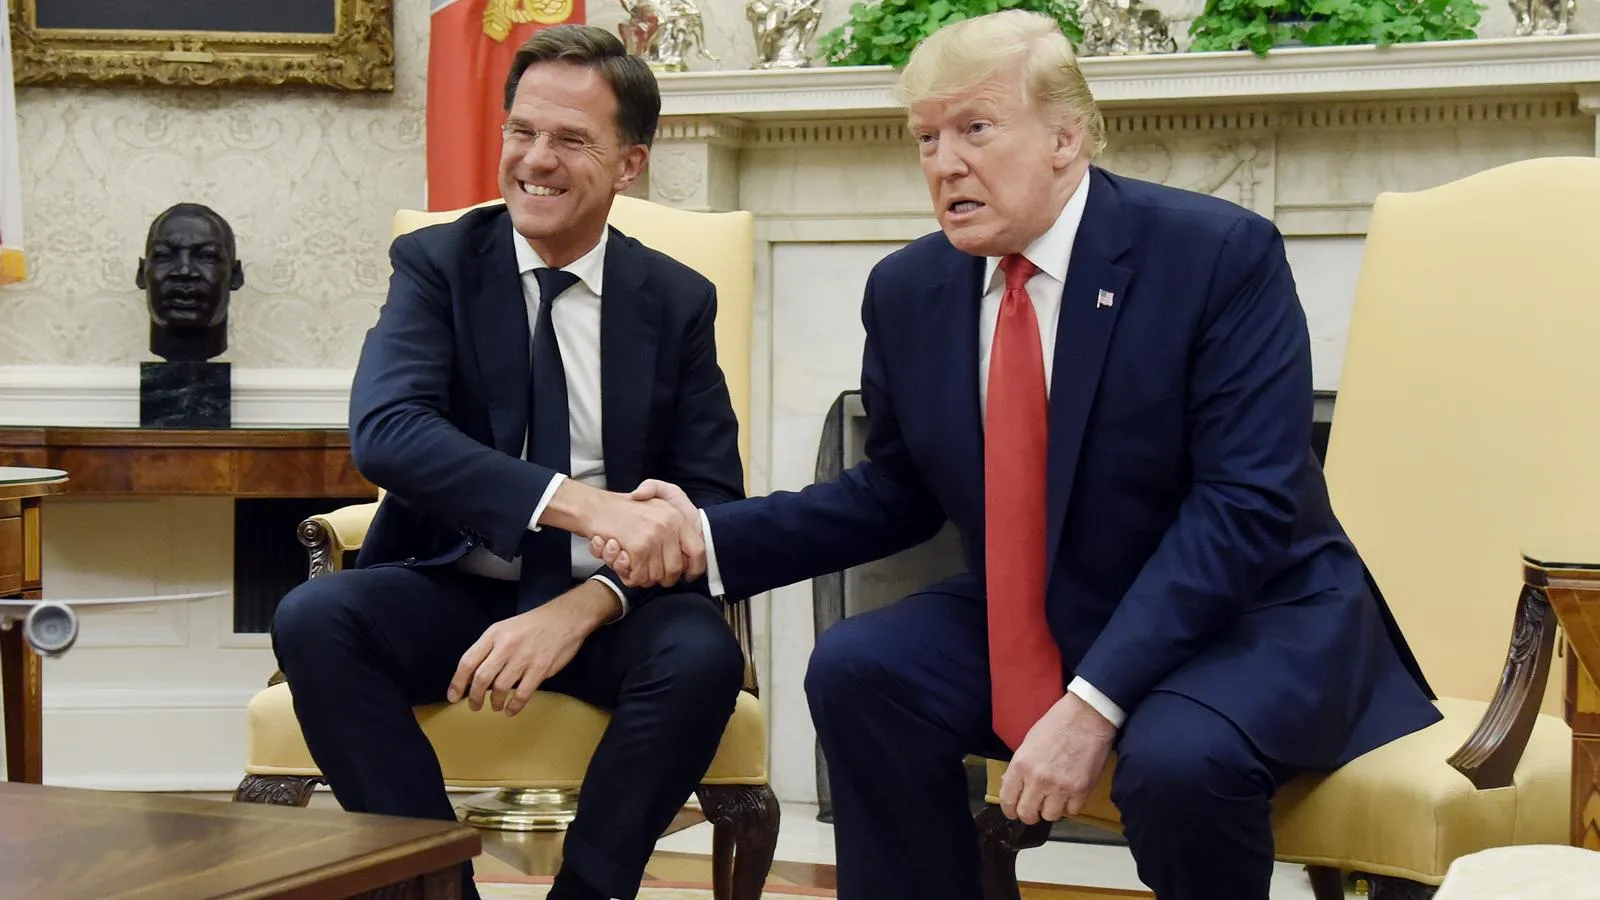 Еще премьер-министр Нидерландов Марк Рютте и еще президент США Дональд Трамп в Овальном кабинете в Вашингтоне, 18 июля 2019 года. Olivier Douliery/CNP/AdMedia